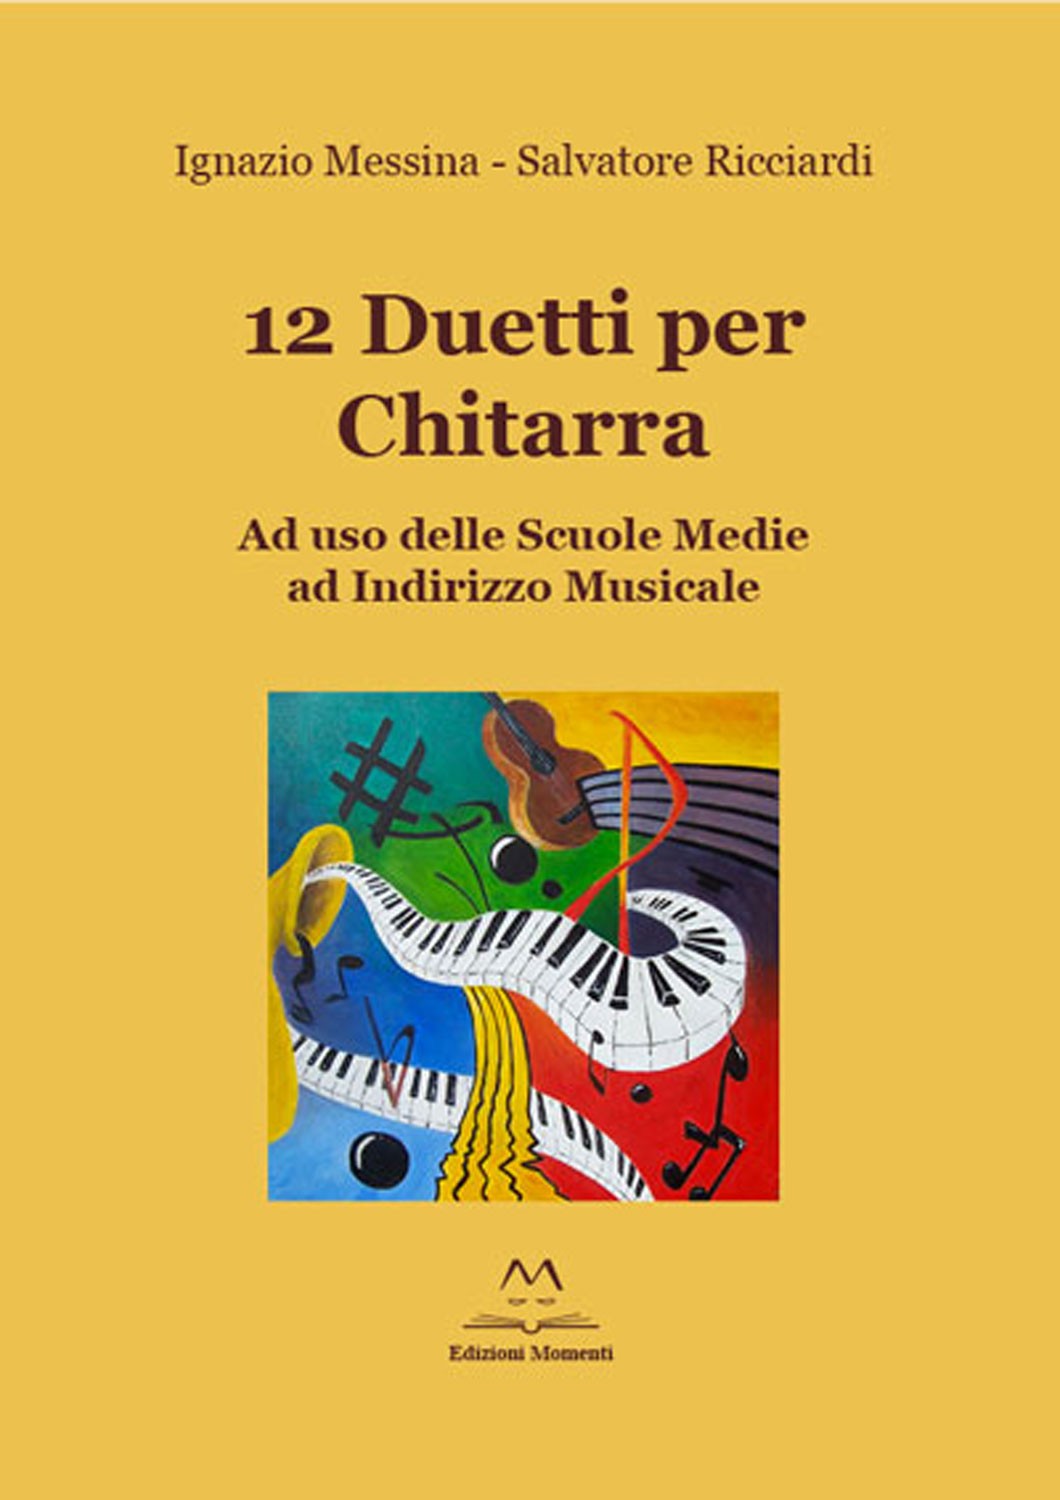 12 duetti per chitarra di I. Messina e S. Ricciardi